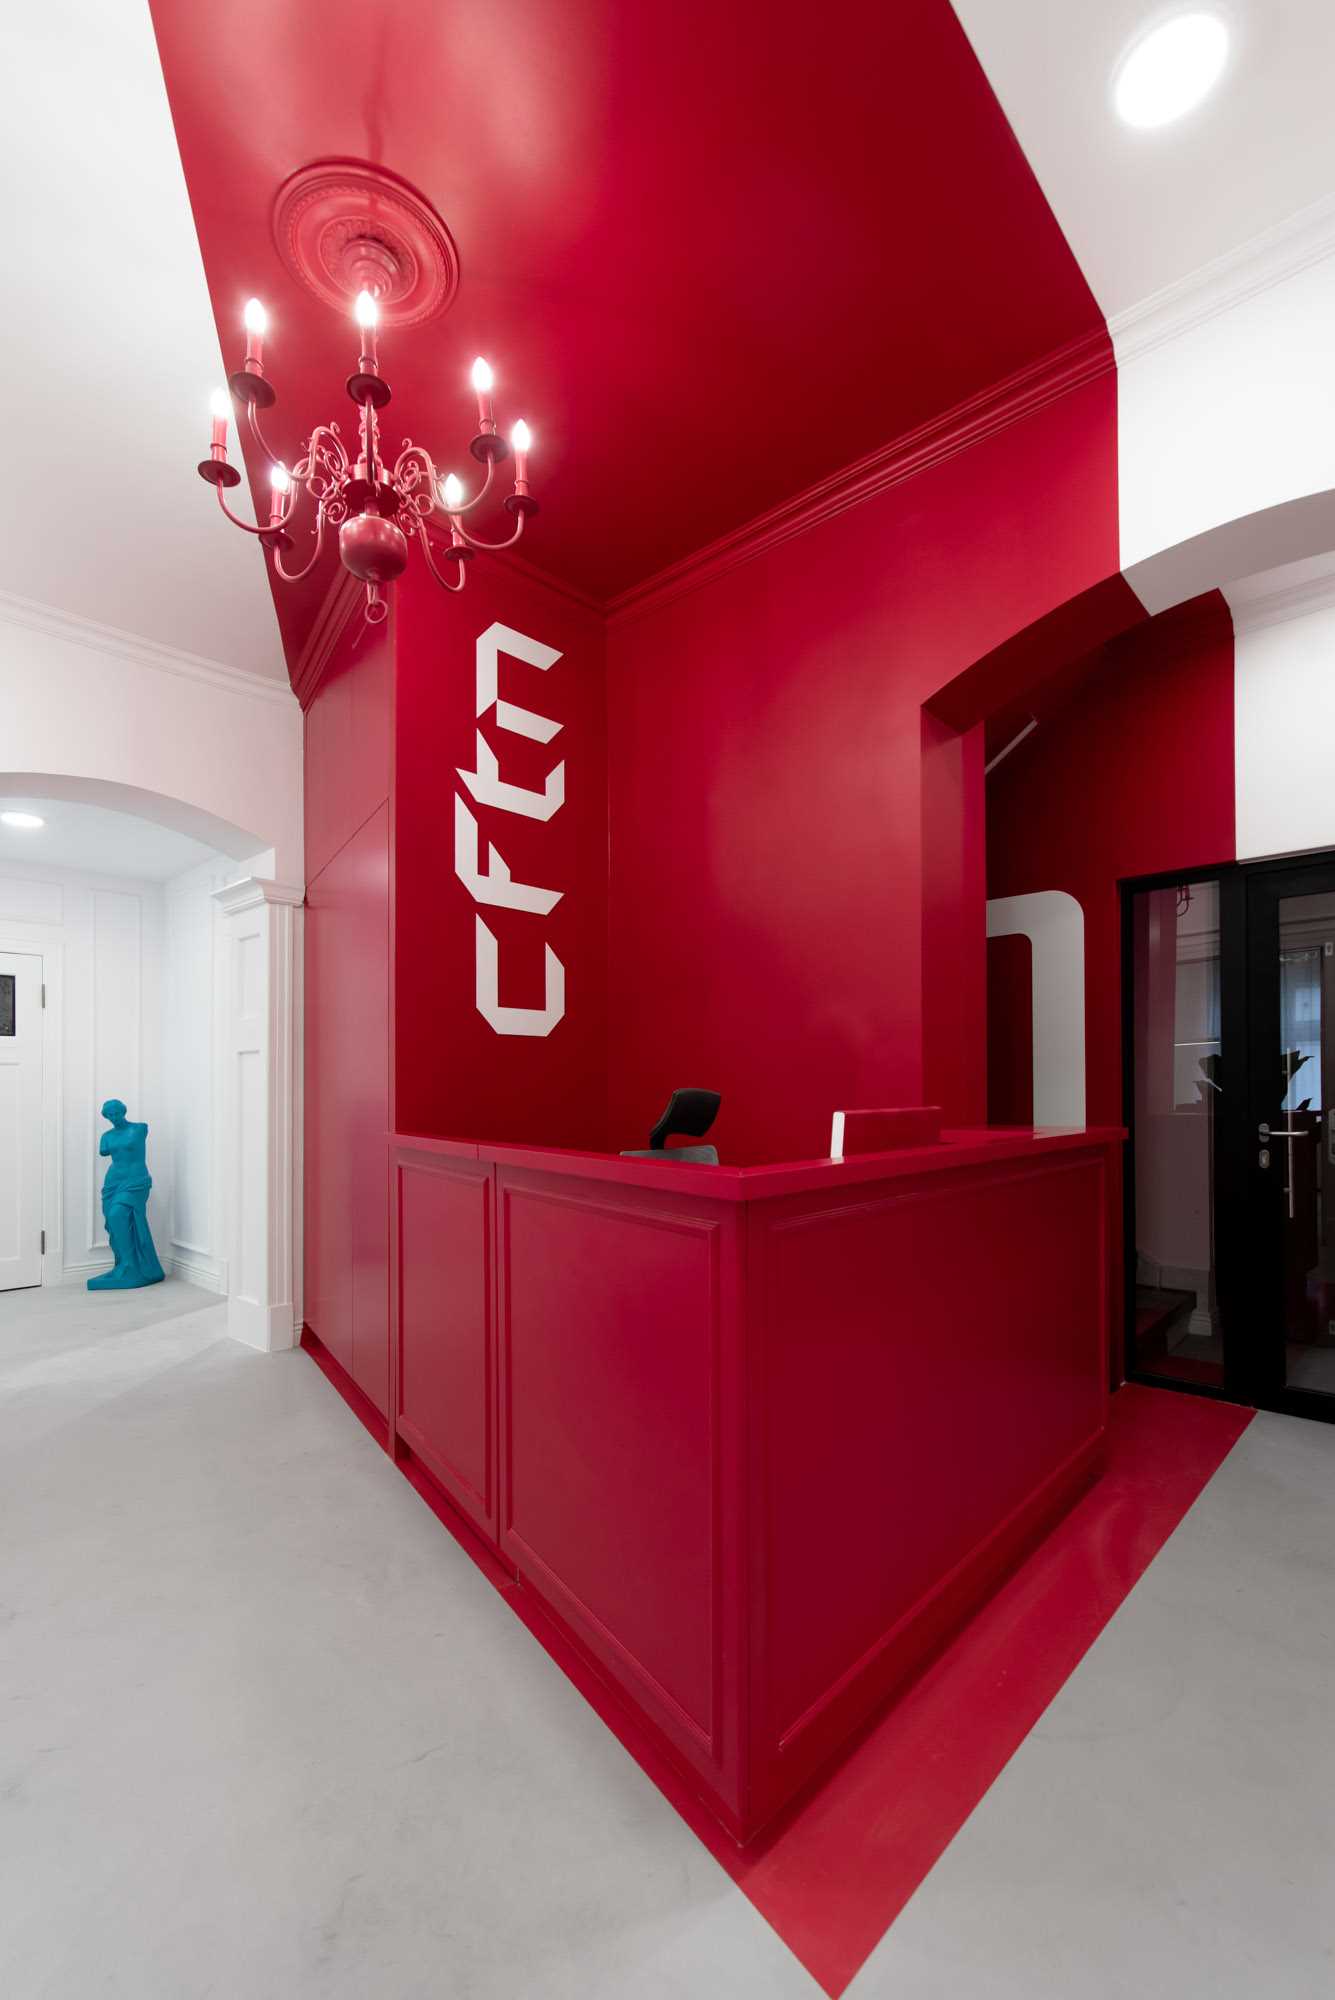 An office lobby with a bold colour choice.